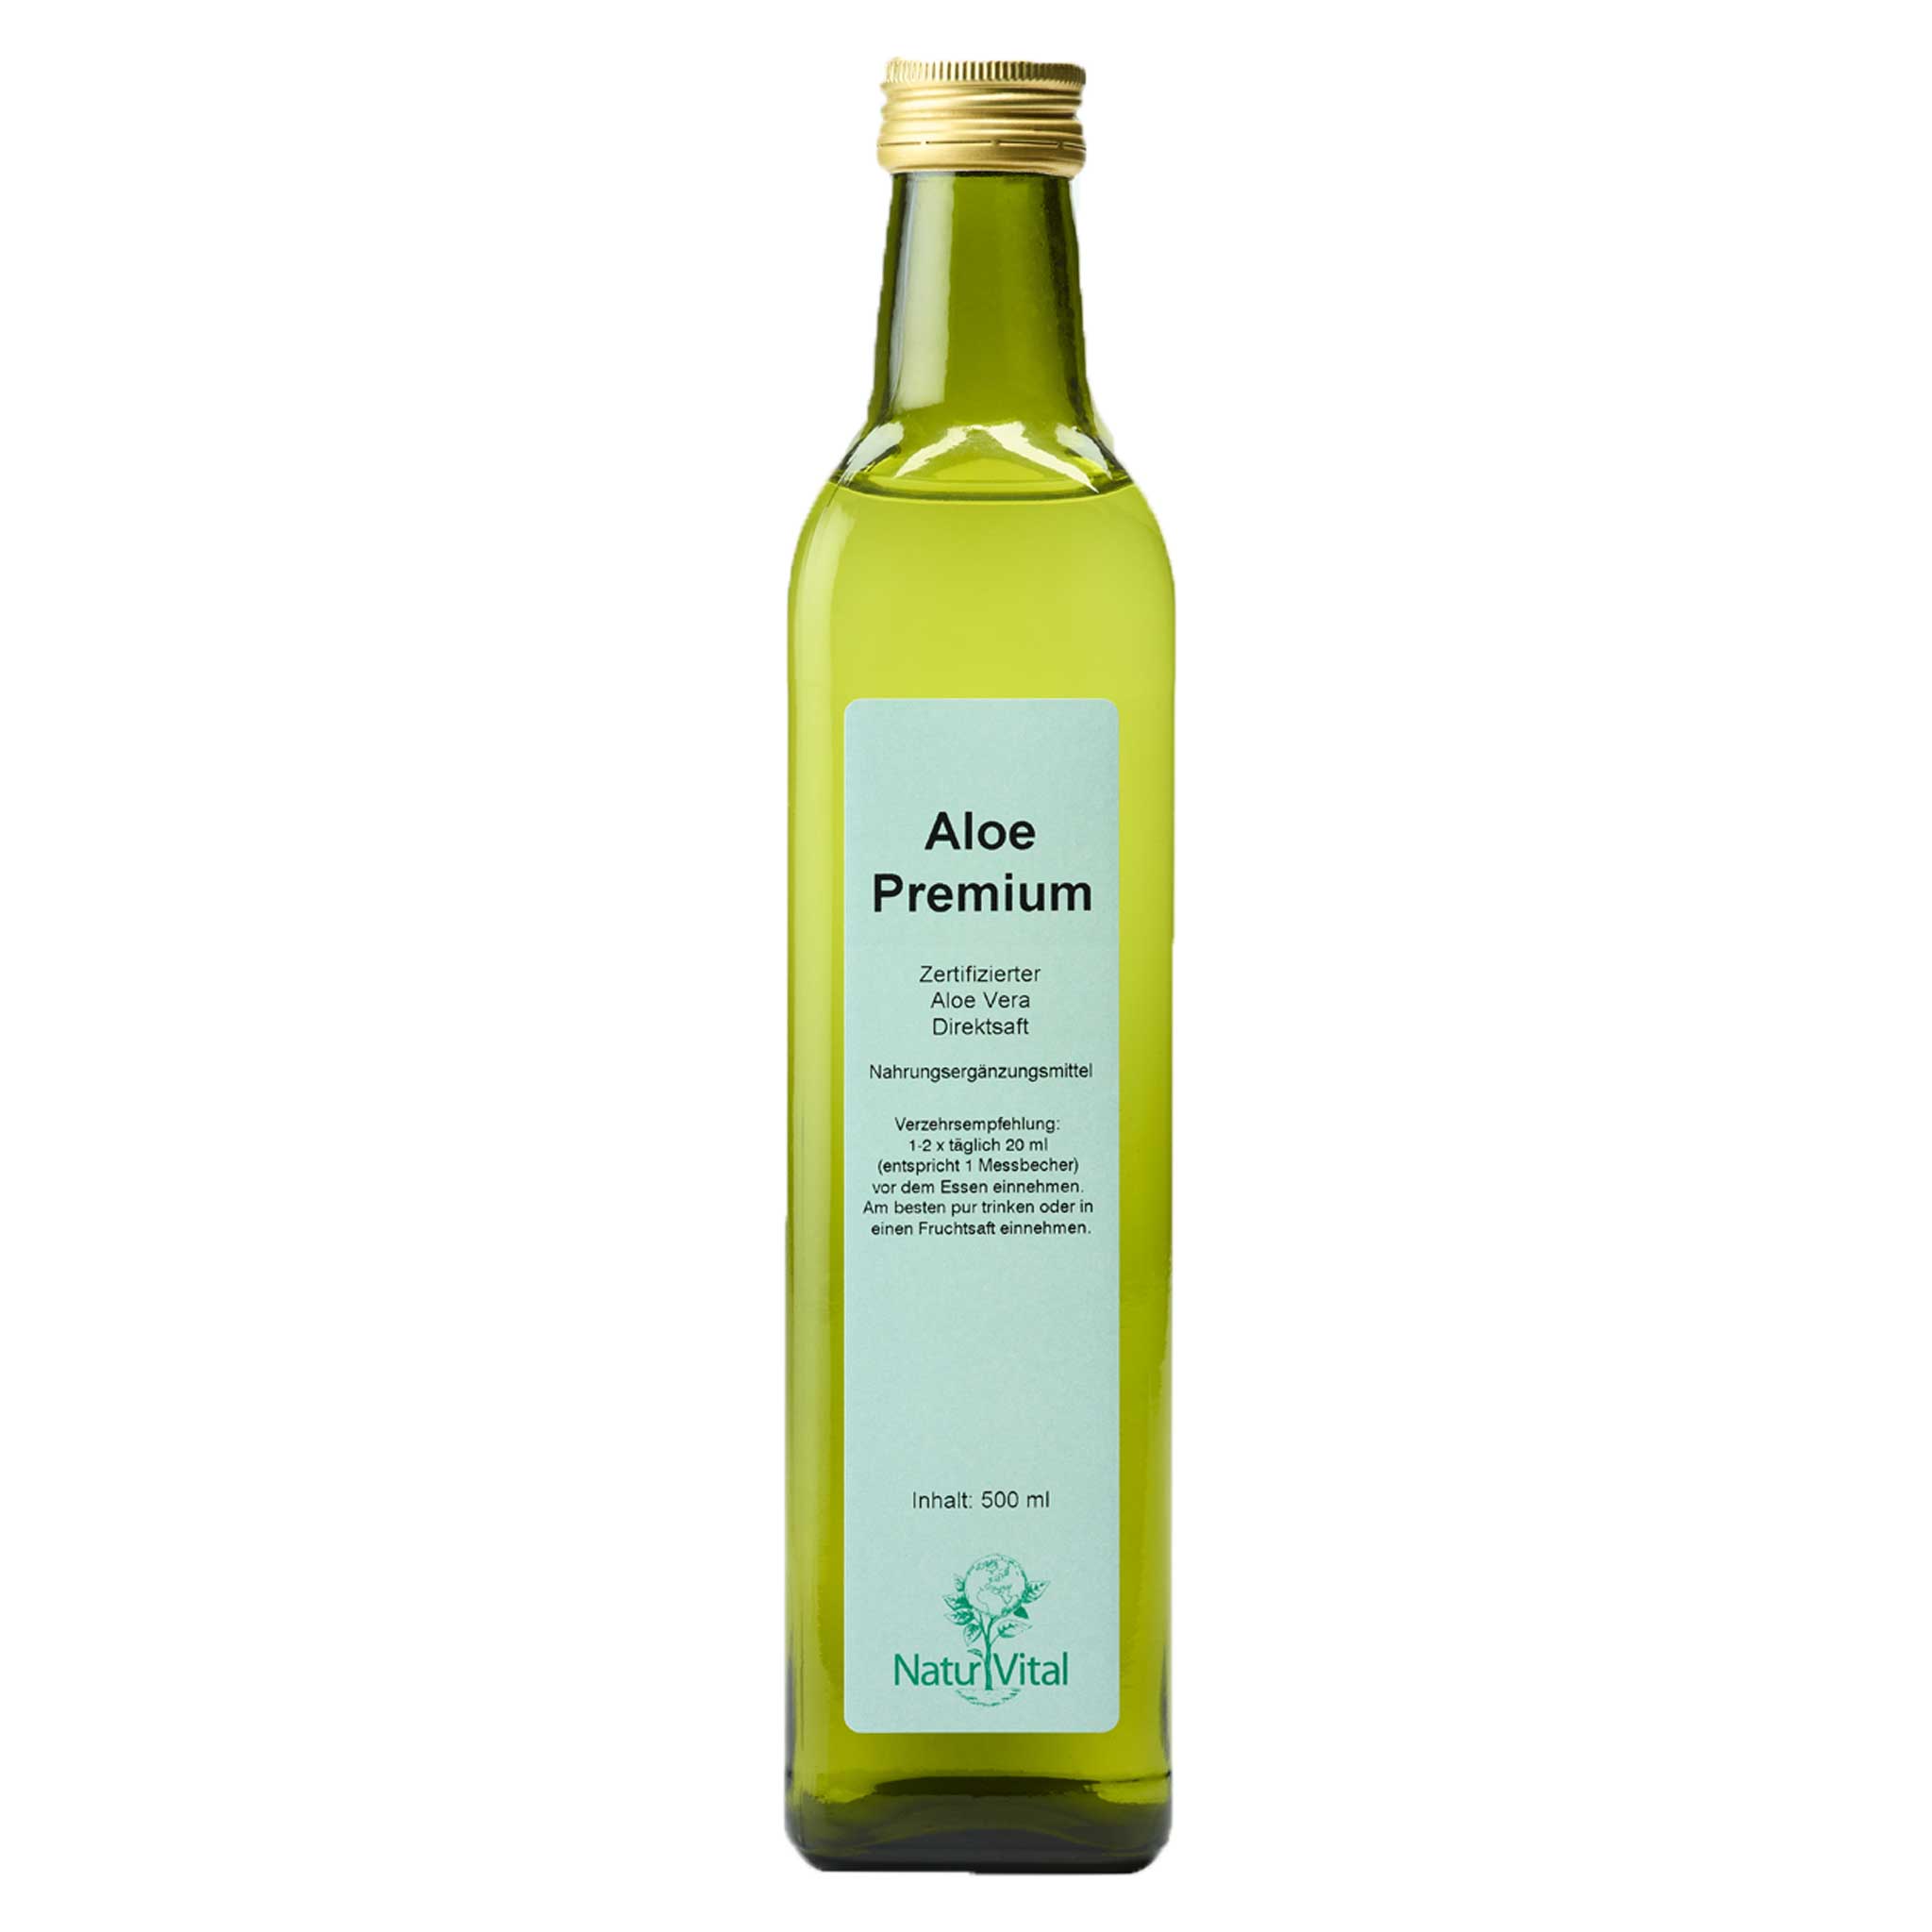 Aloe Premium von Natur Vital in 500 Milliliter Flasche Front